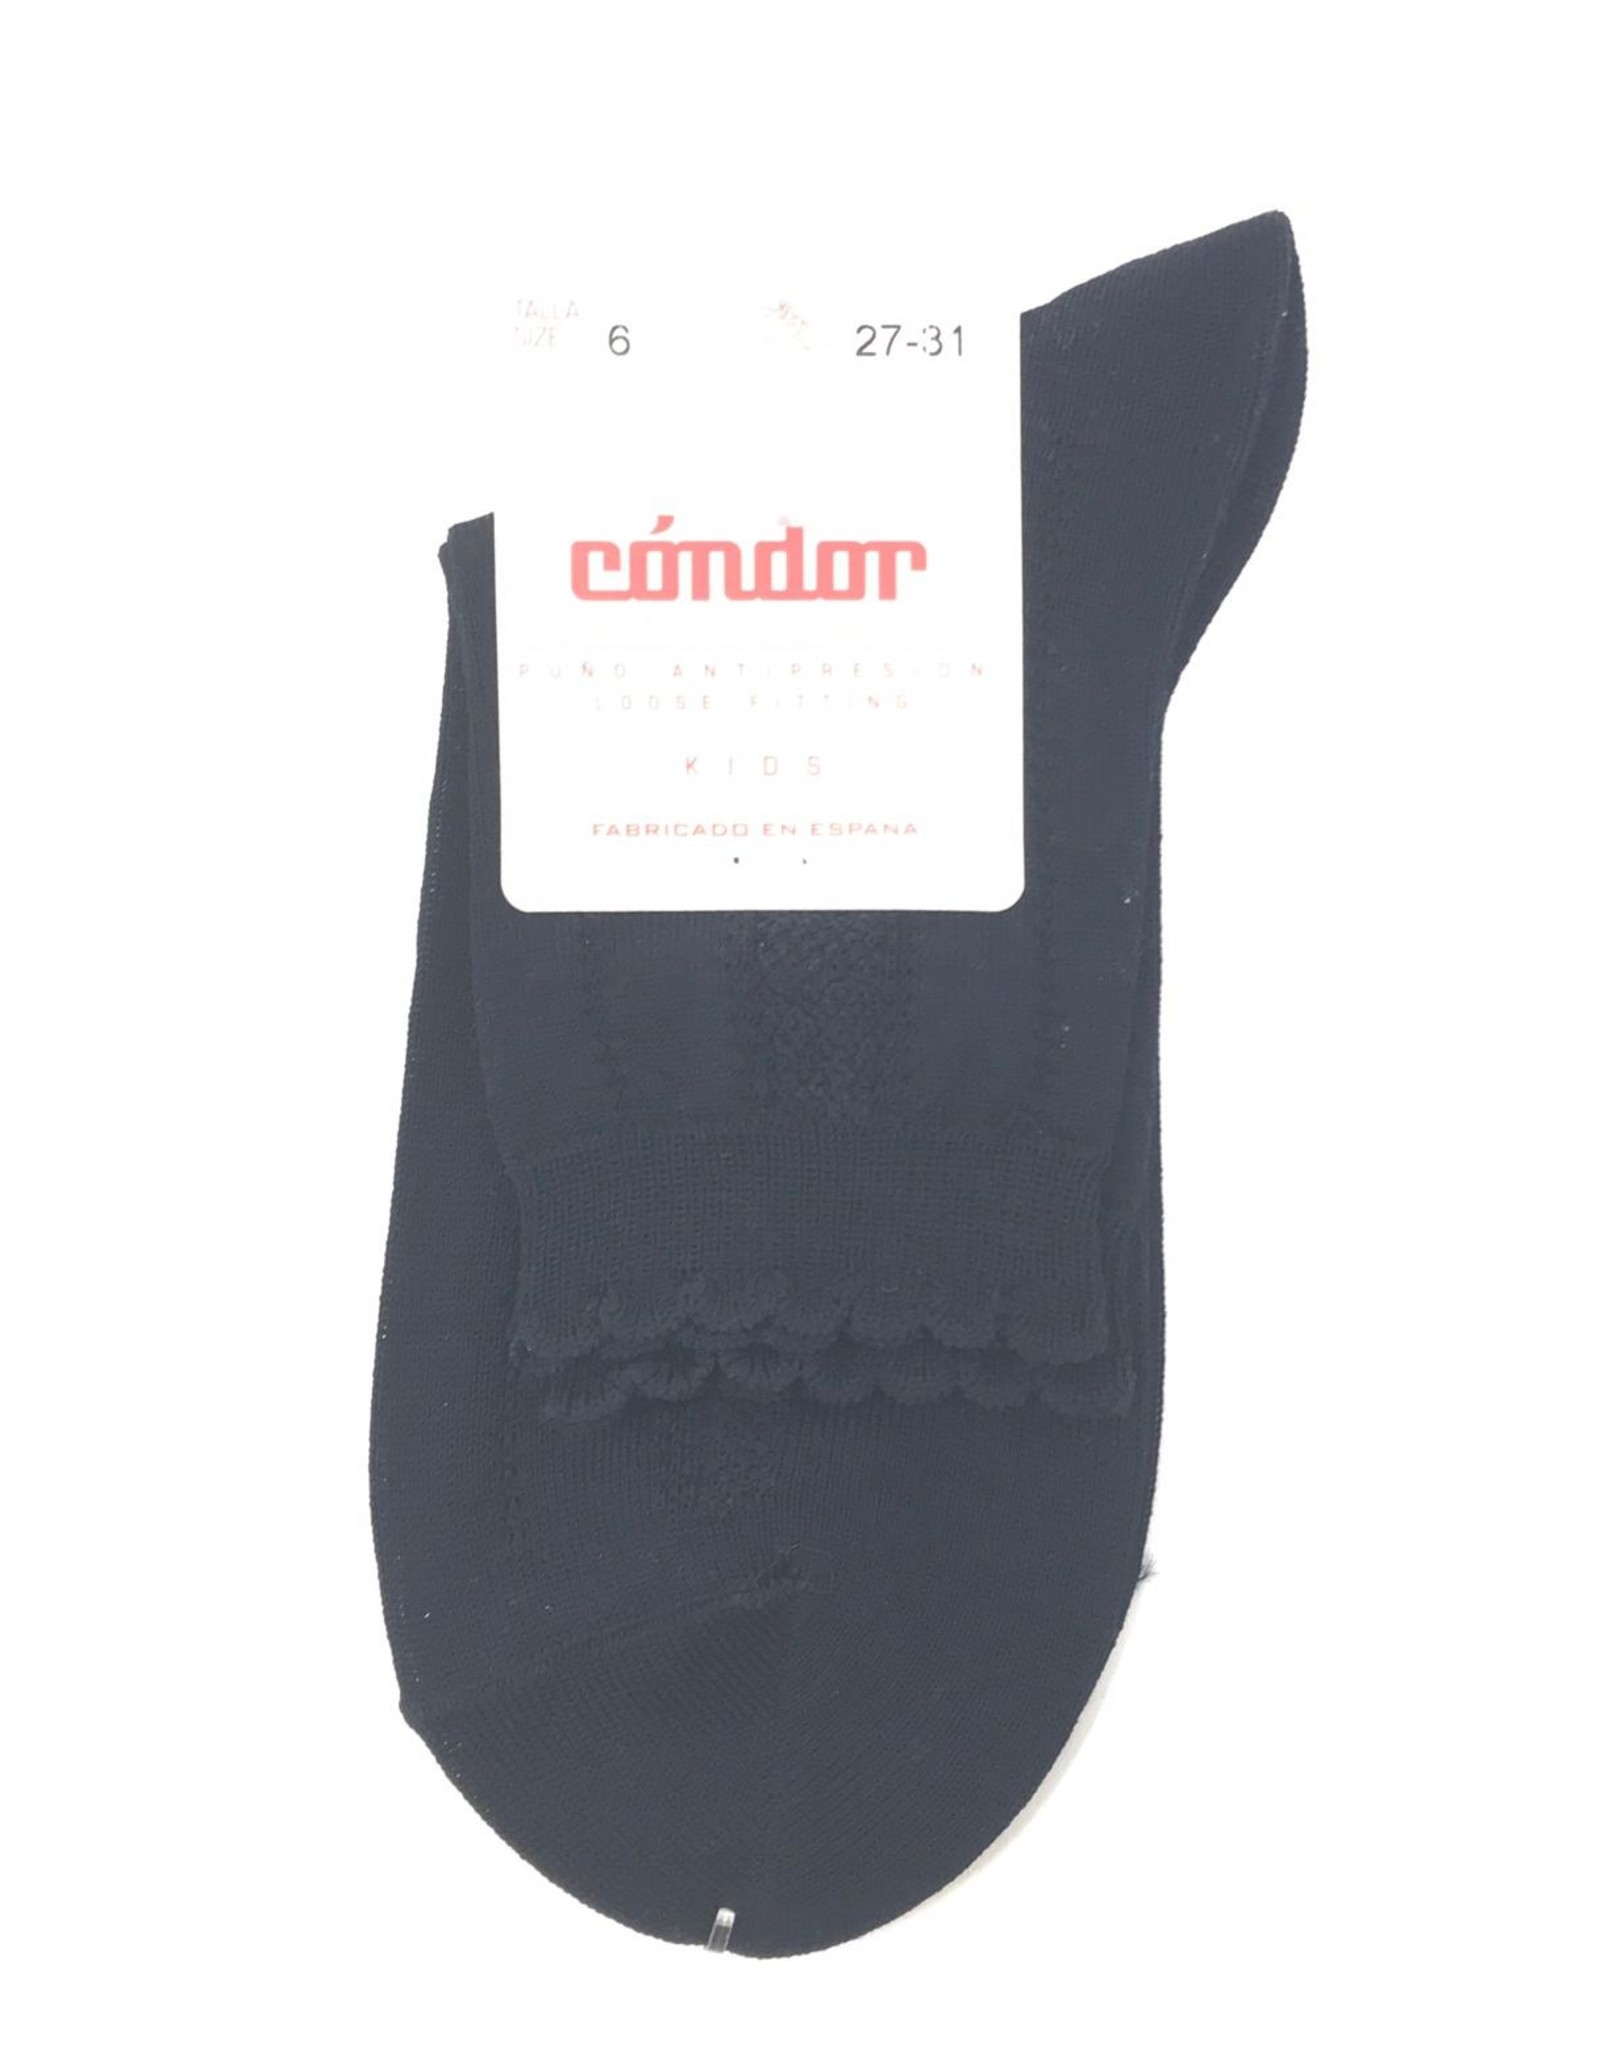 Condor Condor Detailed Scallop Edge Sock